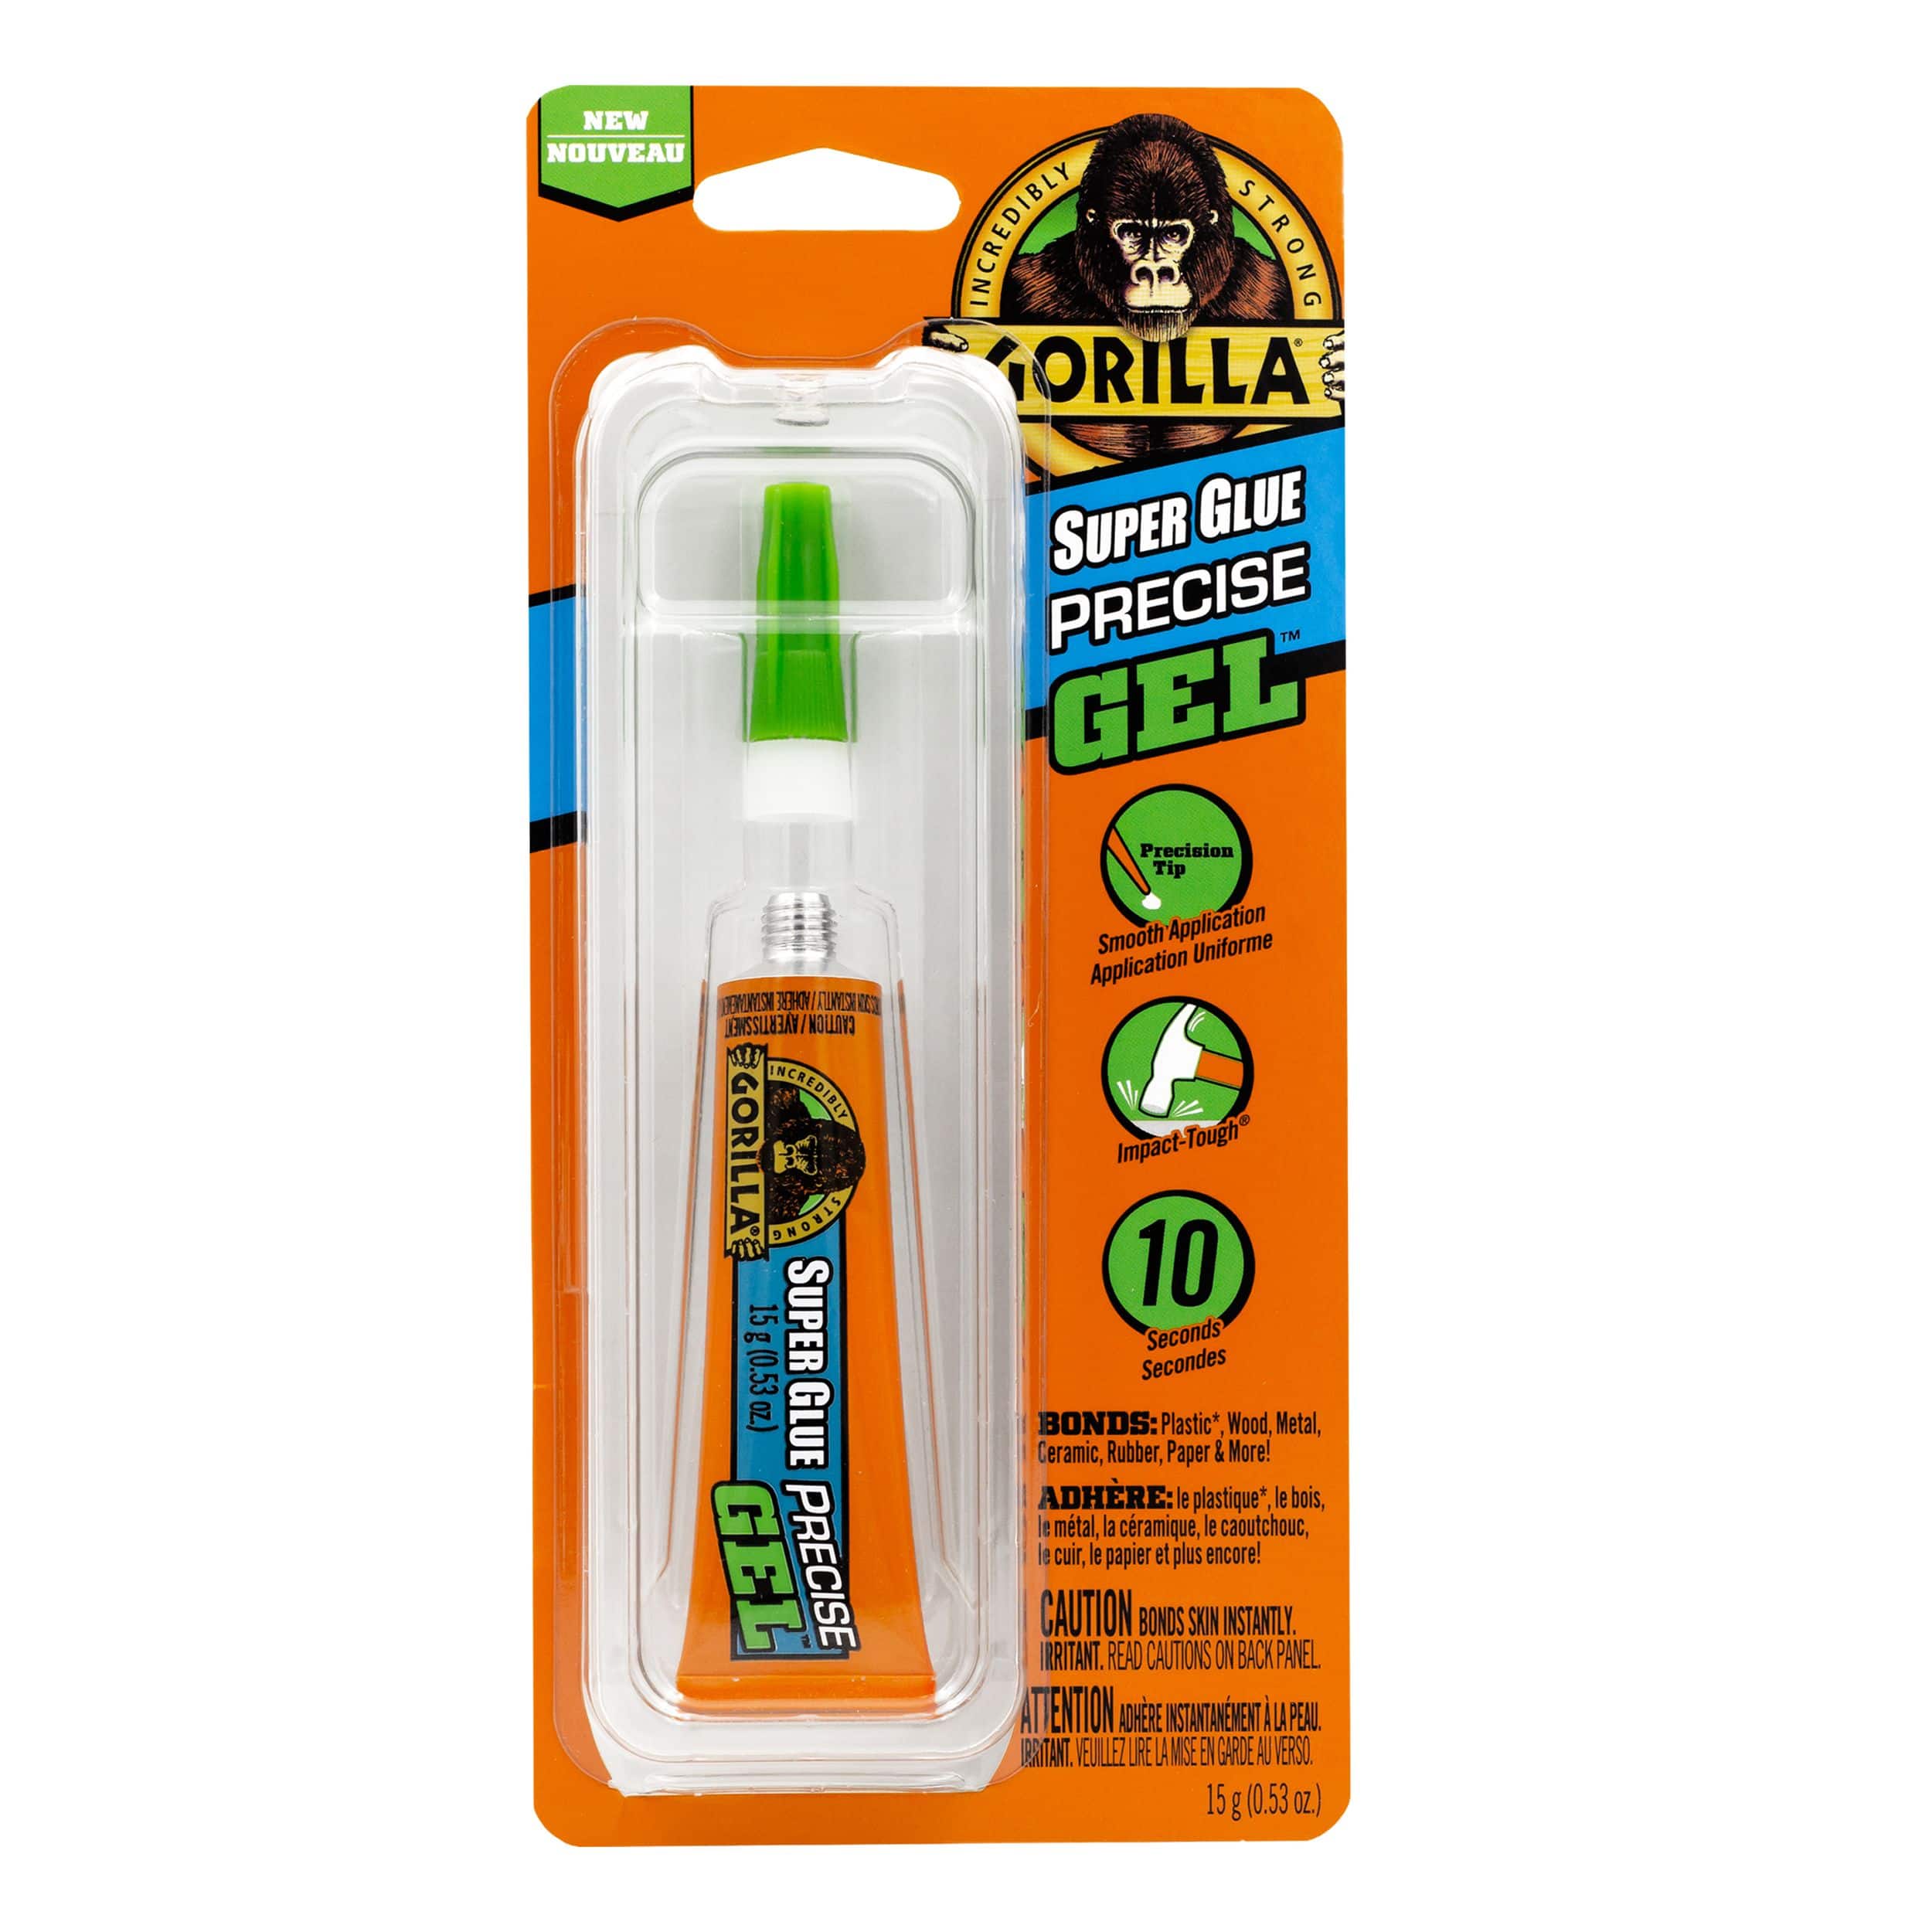 Gorilla Super Glue, 3 grams